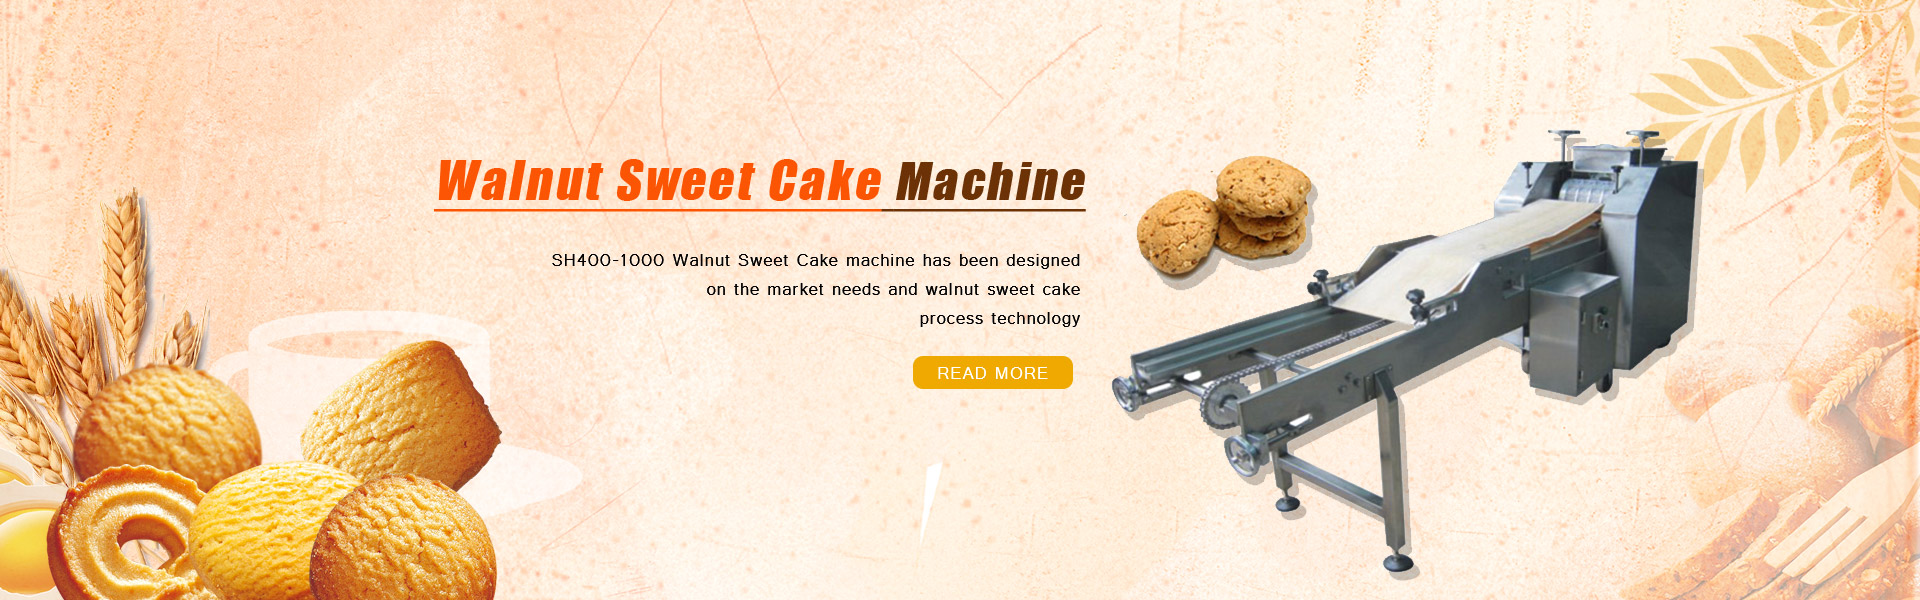 Walnut Sweet Cake Machine